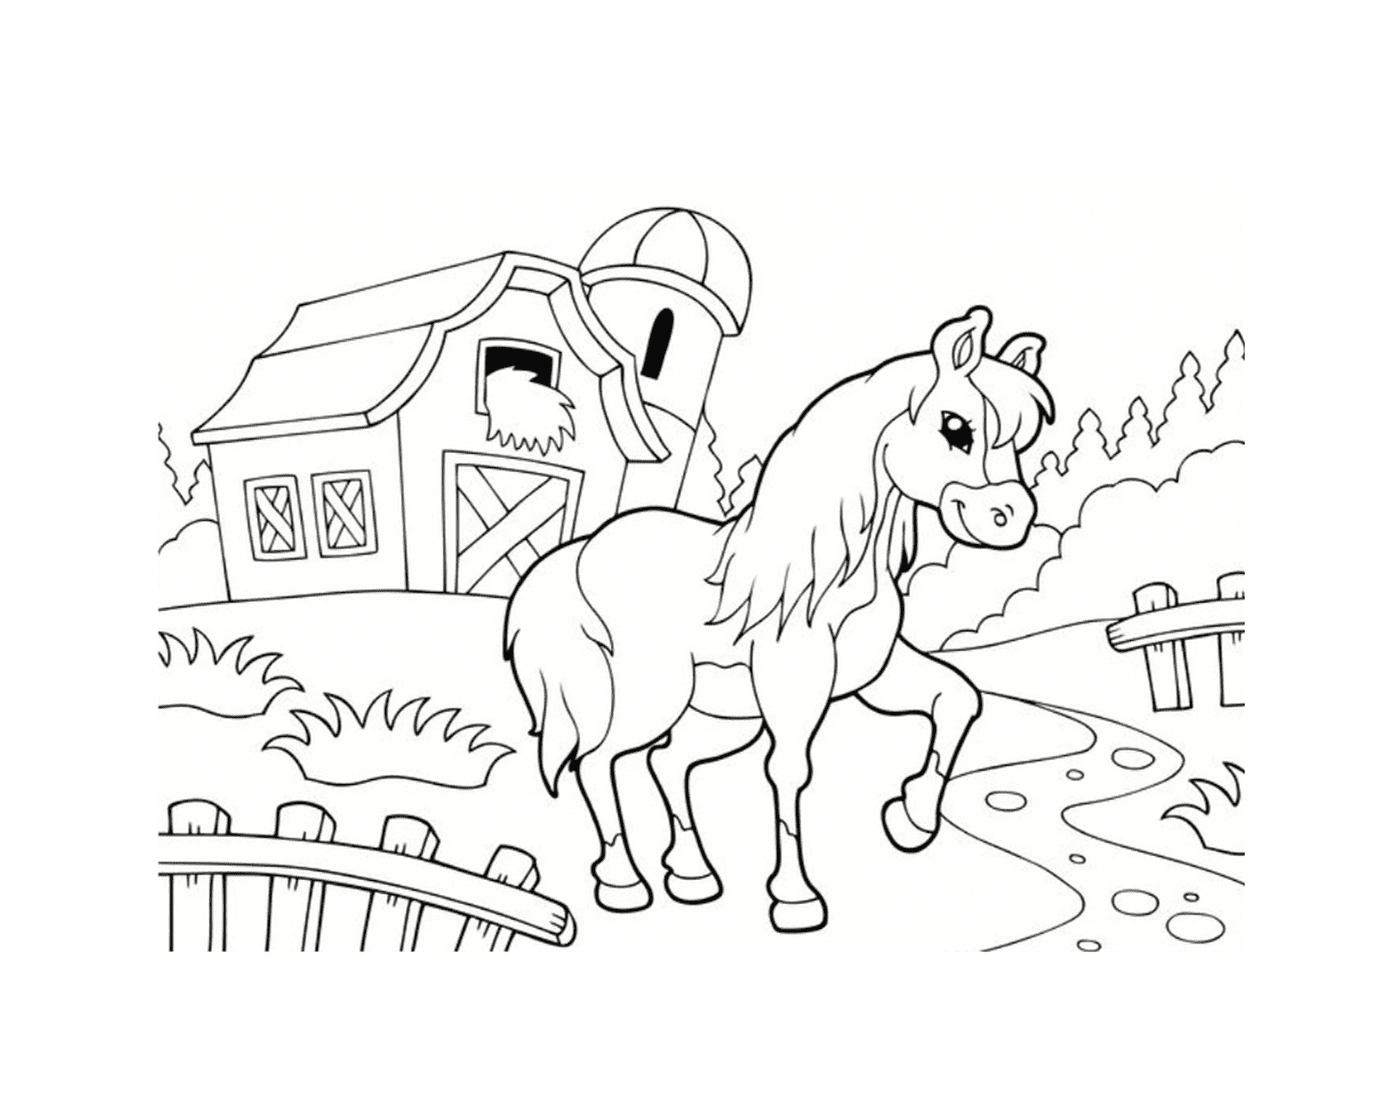  Pony en la granja, ambiente rural 